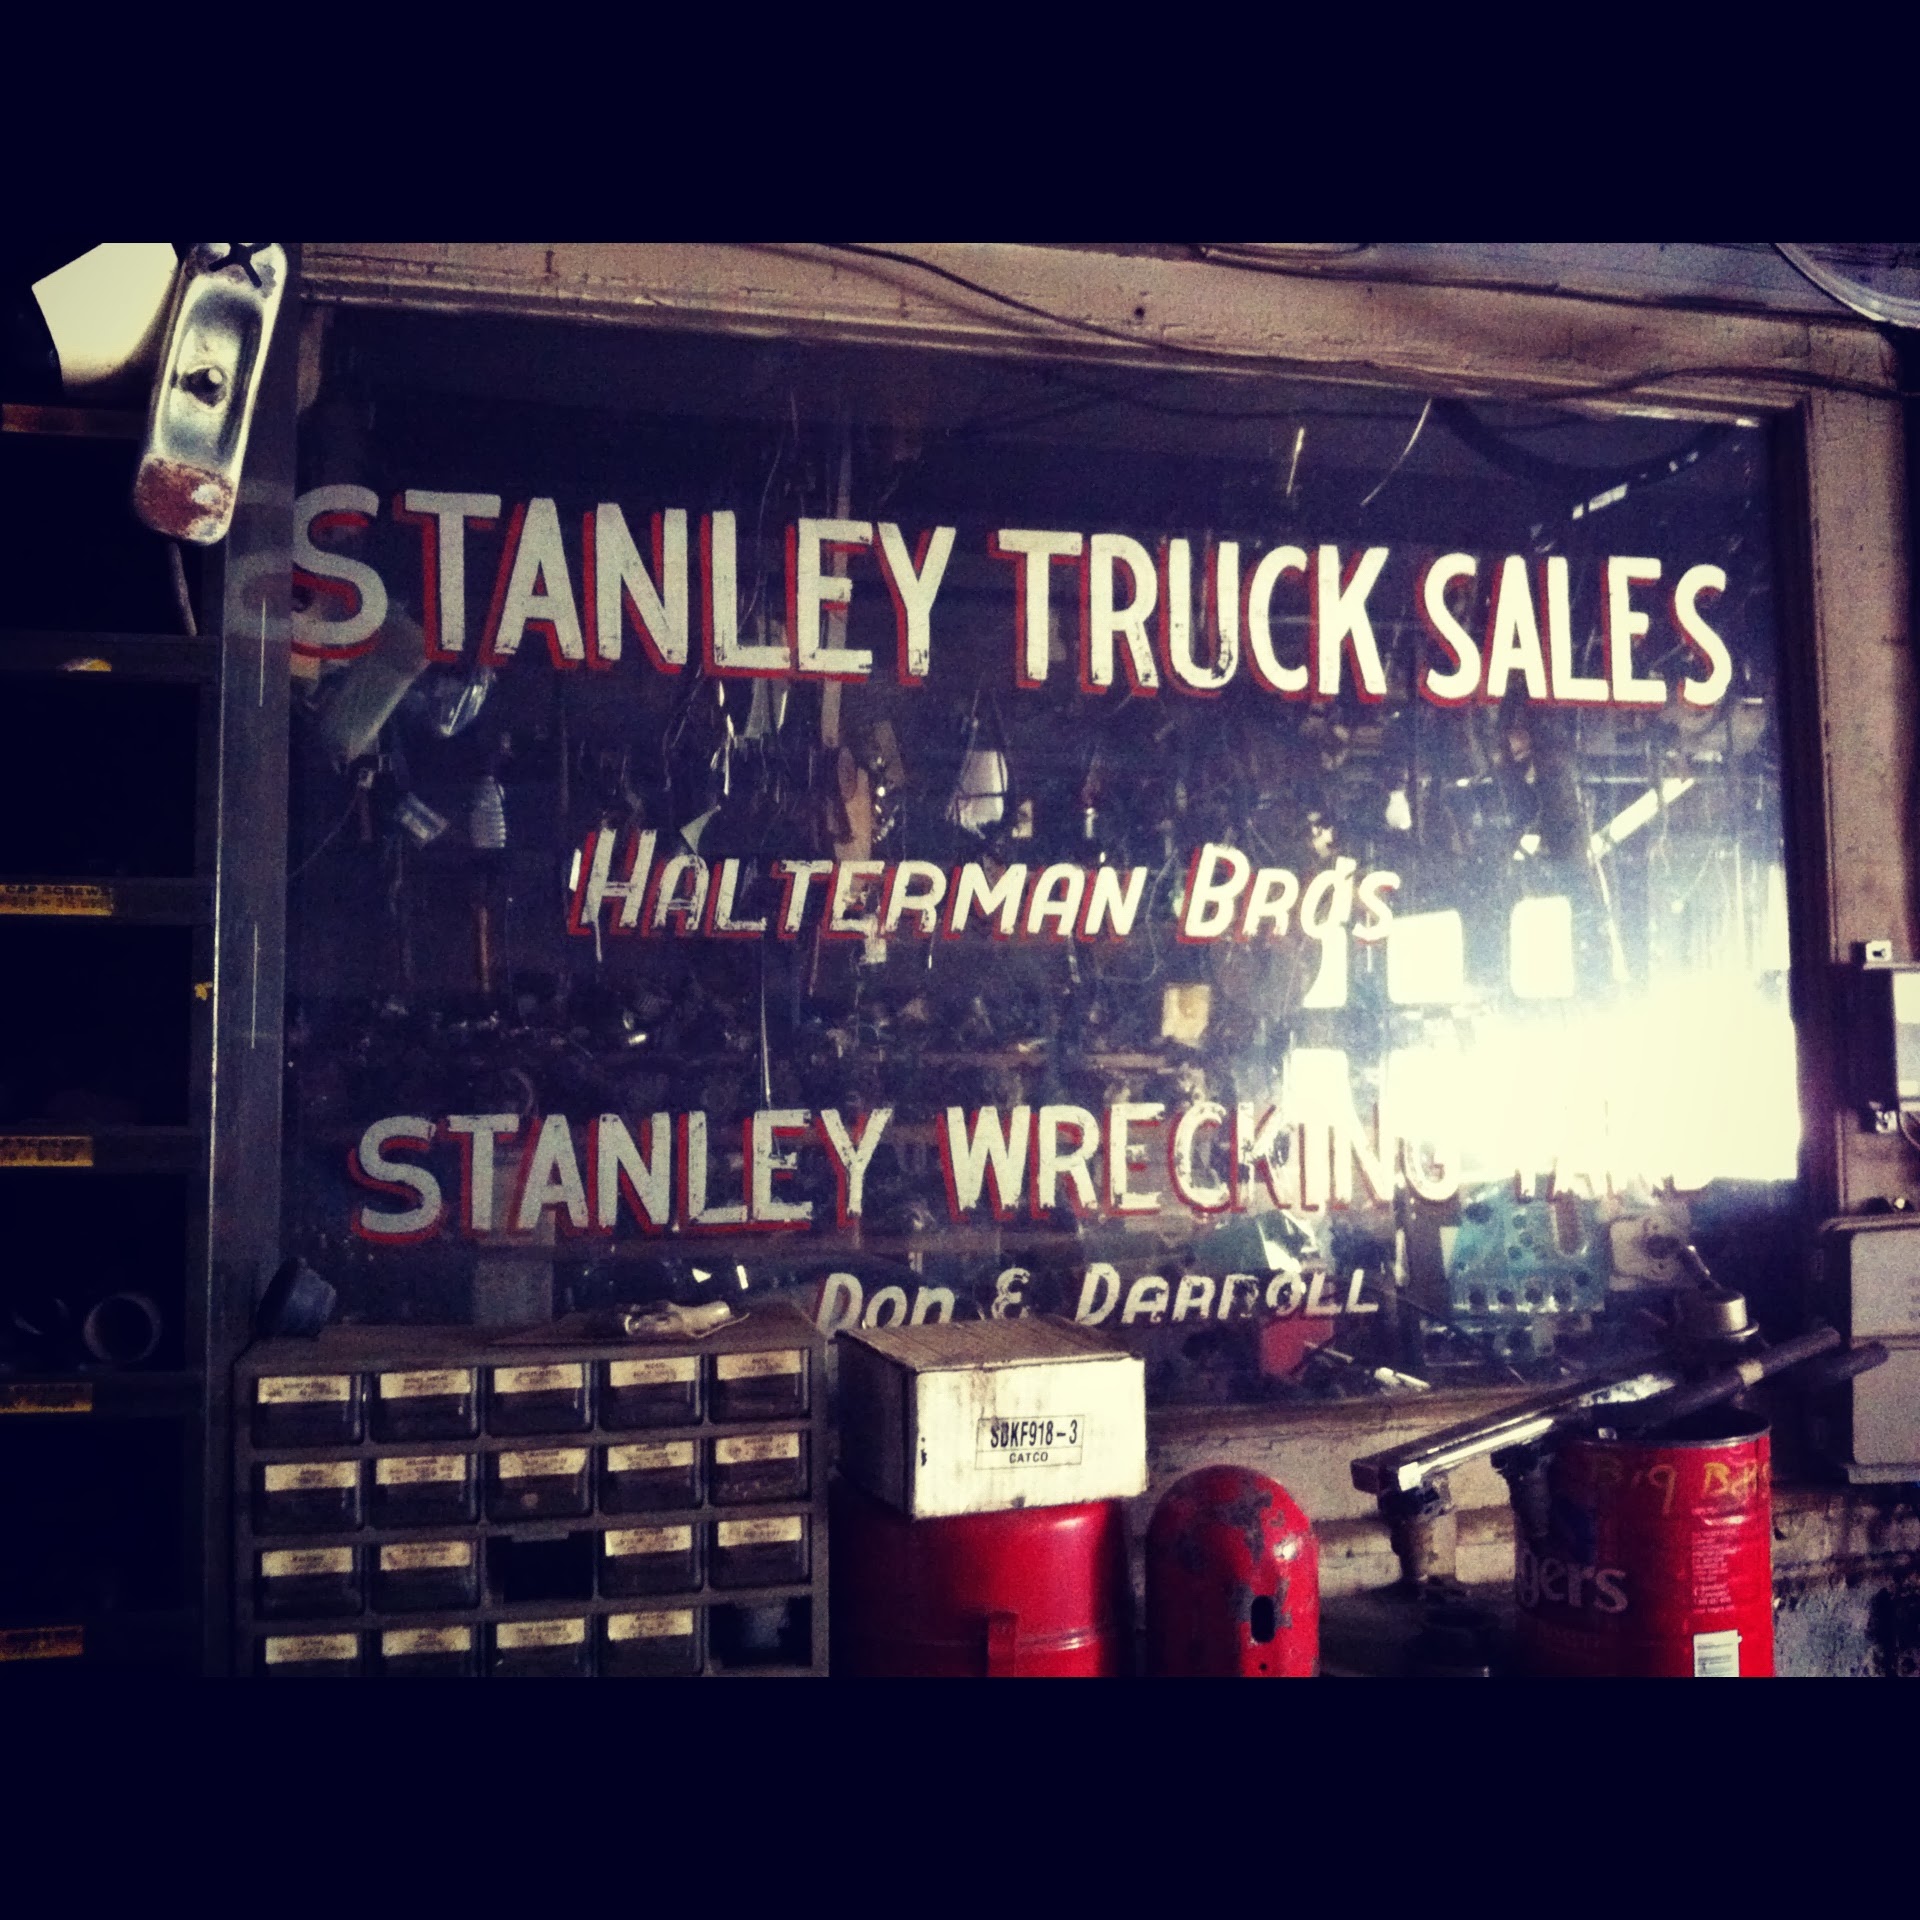 Stanley Truck Sales & Wrecking